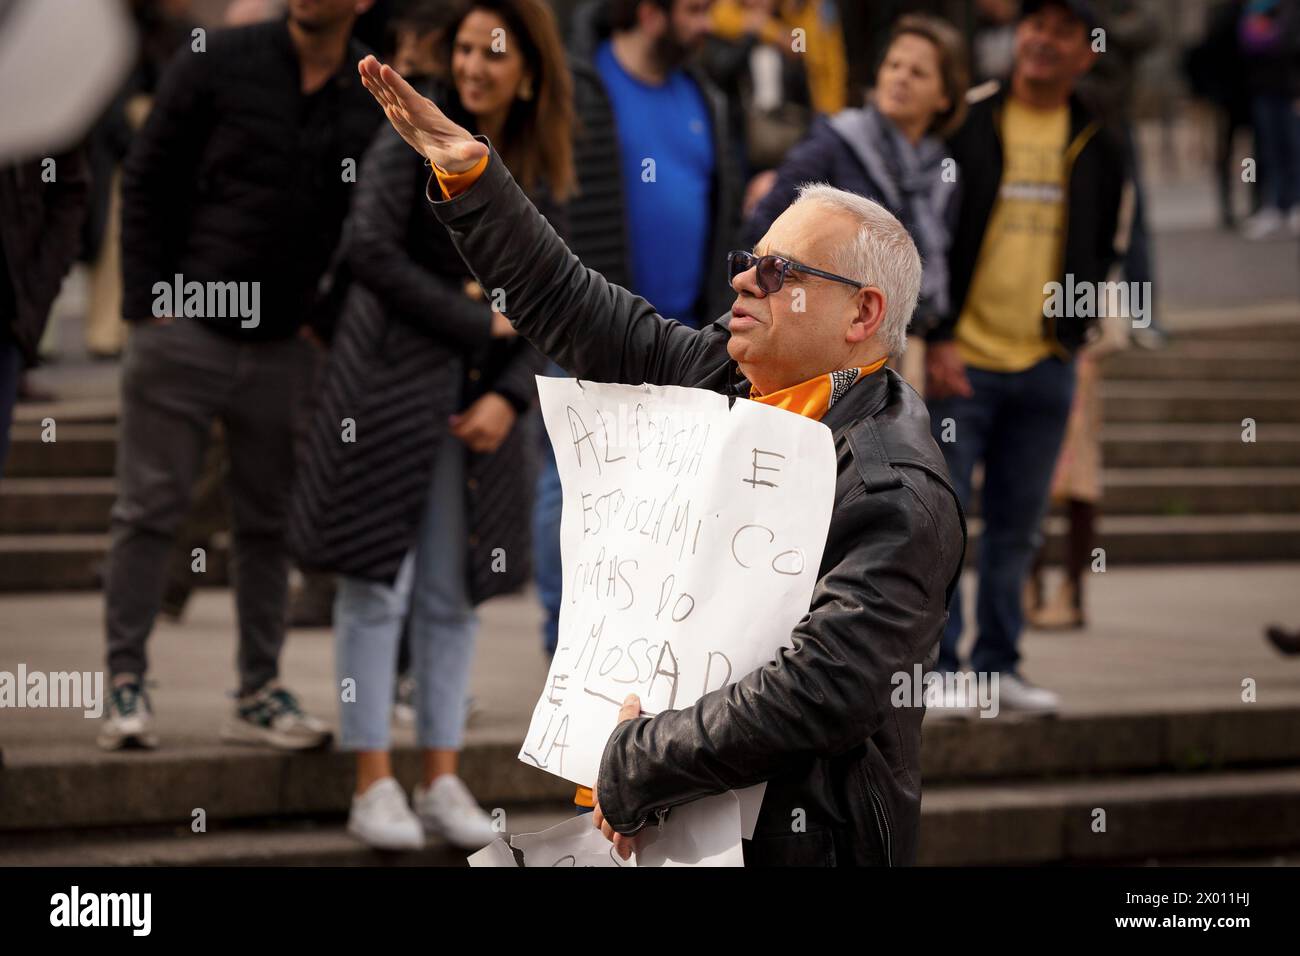 Porto, Portogallo. 6 aprile 2024. (NOTA PER I REDATTORI: L'immagine contiene profanità) un manifestante anti-immigrazione tiene un cartello durante la dimostrazione. Proteste antifasciste e anti-immigrazione hanno avuto luogo a Porto, all'incirca nello stesso momento e luogo. (Foto di David Oliveira/SOPA Images/Sipa USA) credito: SIPA USA/Alamy Live News Foto Stock